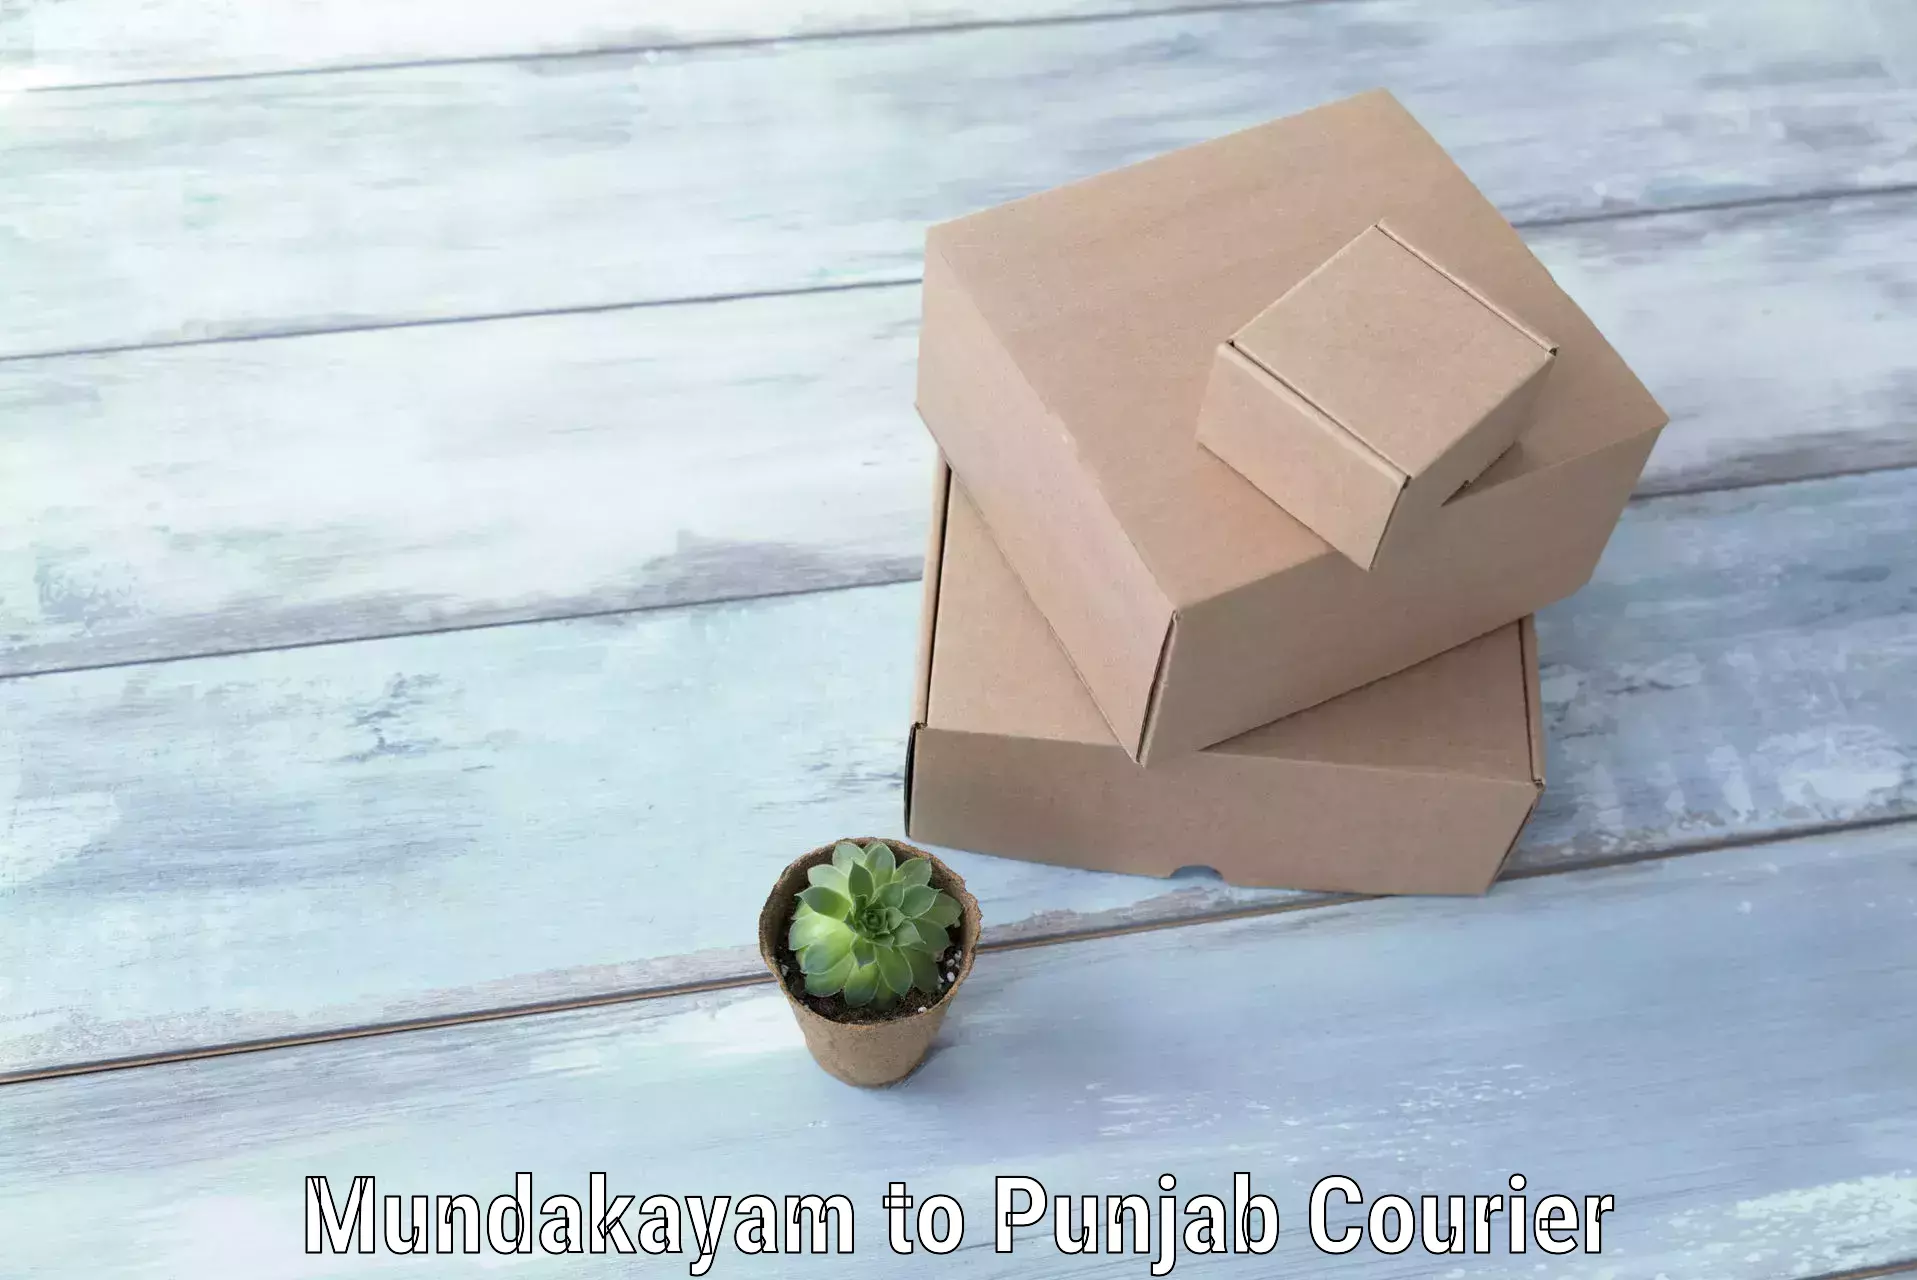 Luggage delivery network Mundakayam to Punjab